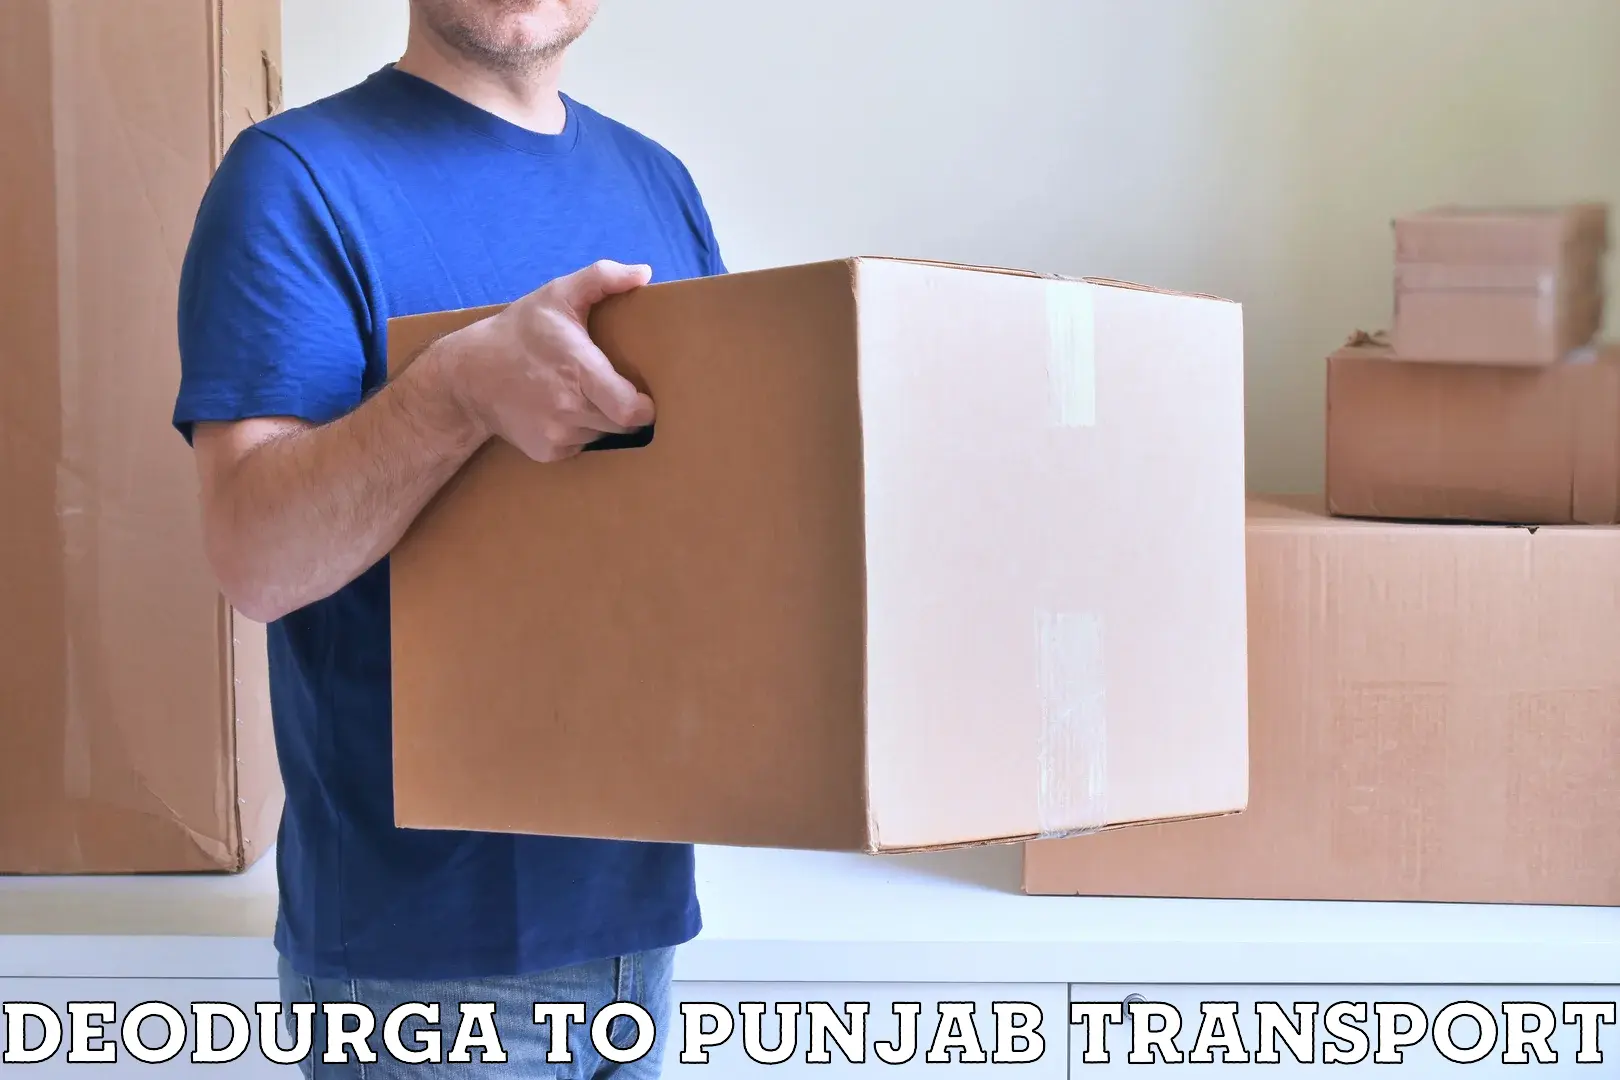 Furniture transport service Deodurga to Zirakpur